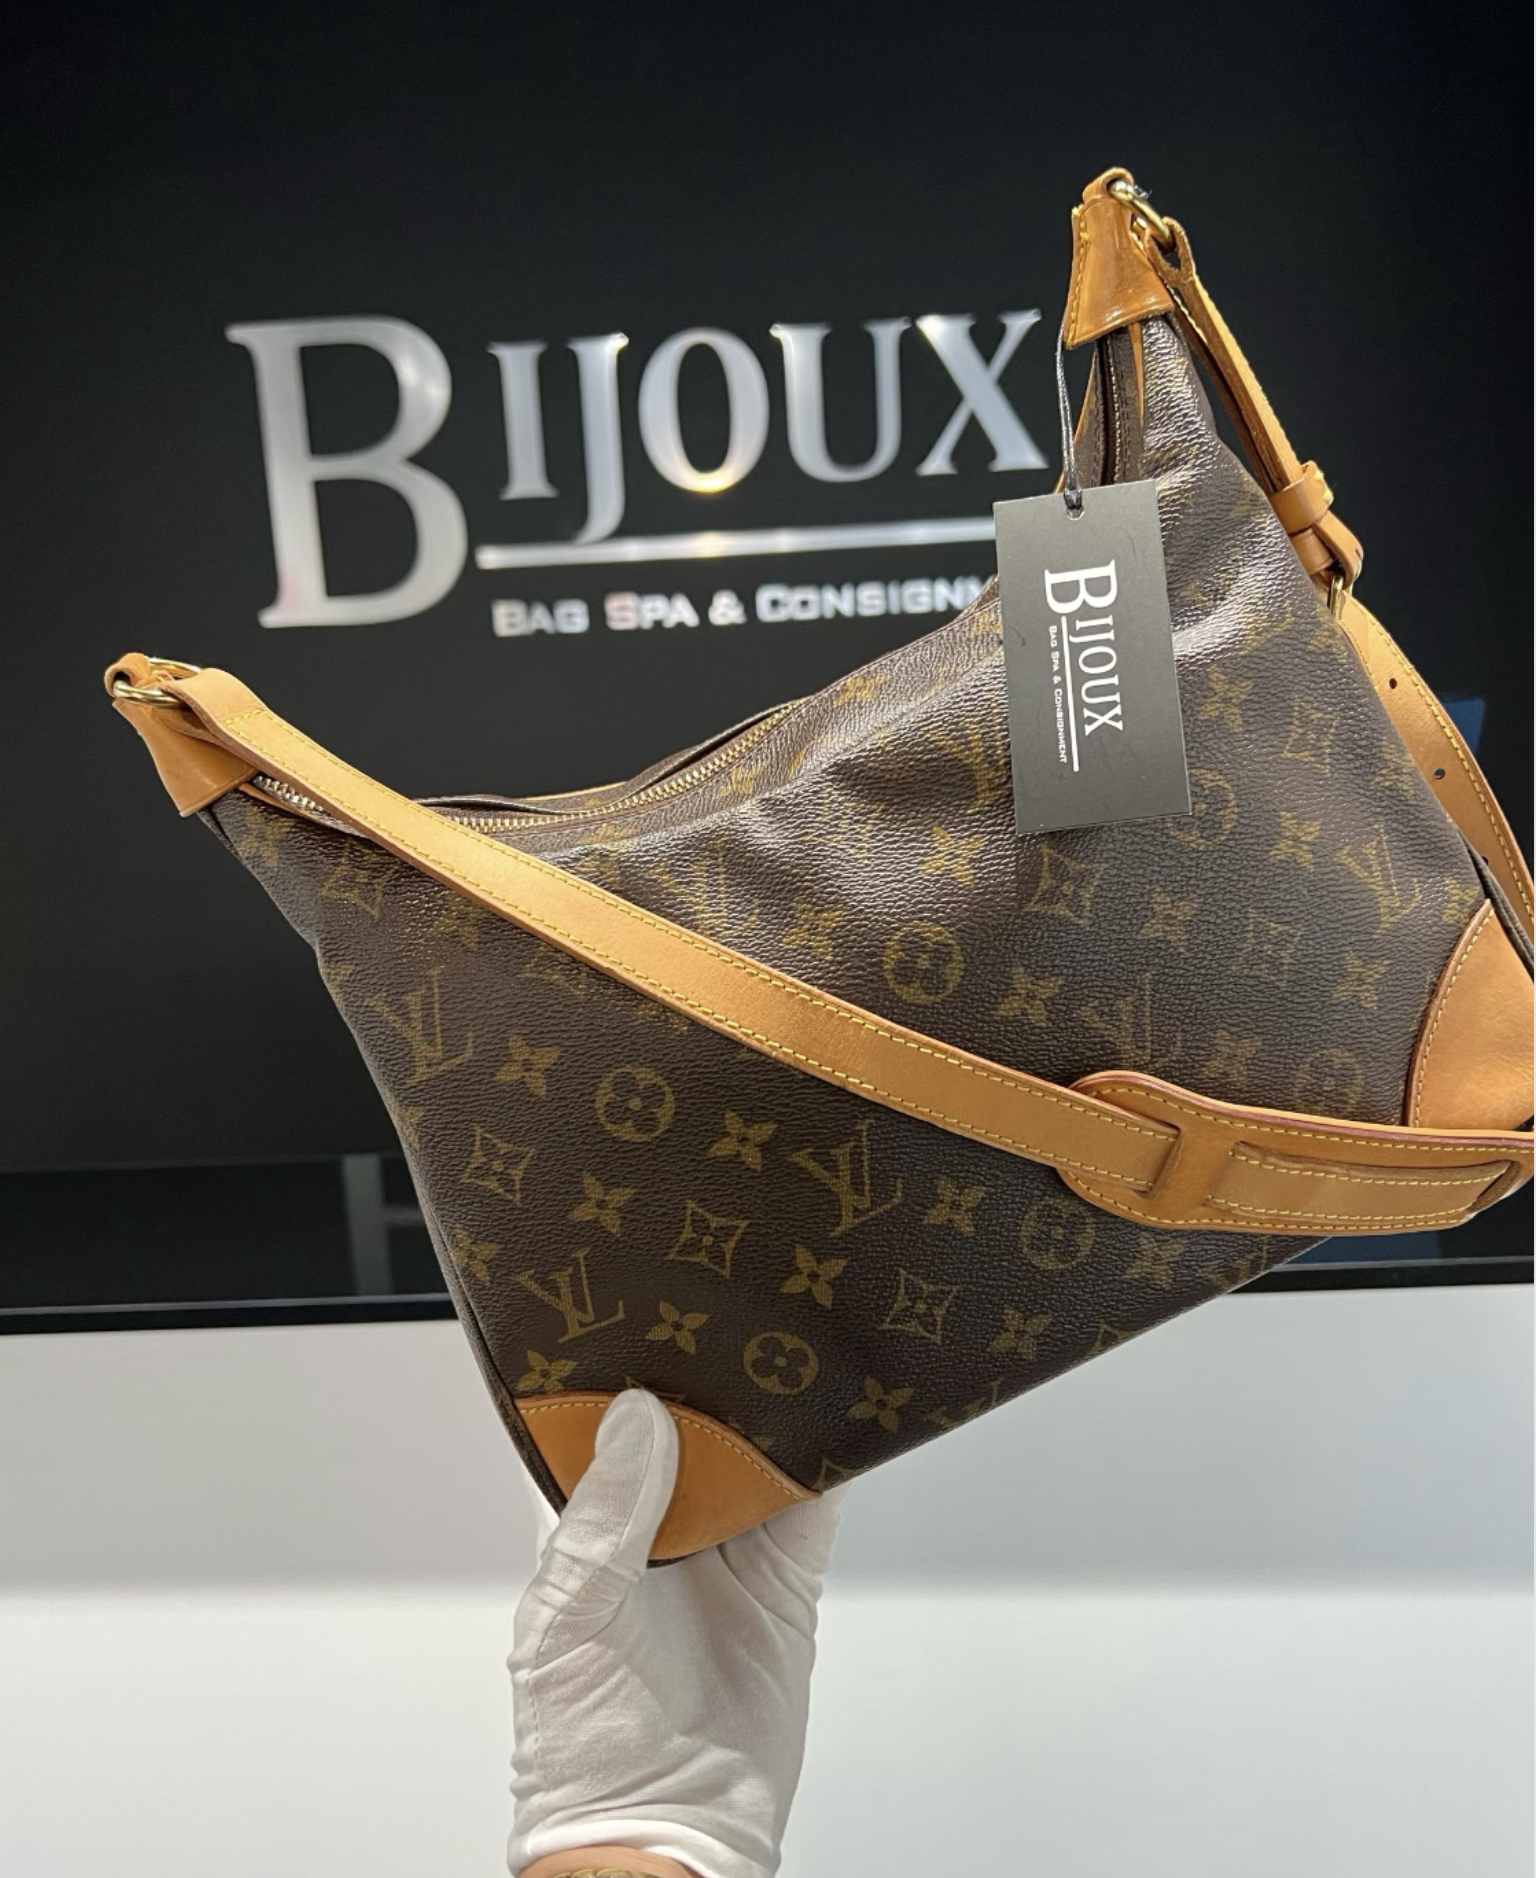 LOUIS VUITTON BOULOGNE 30 - Bijoux Bag Spa & Consignment